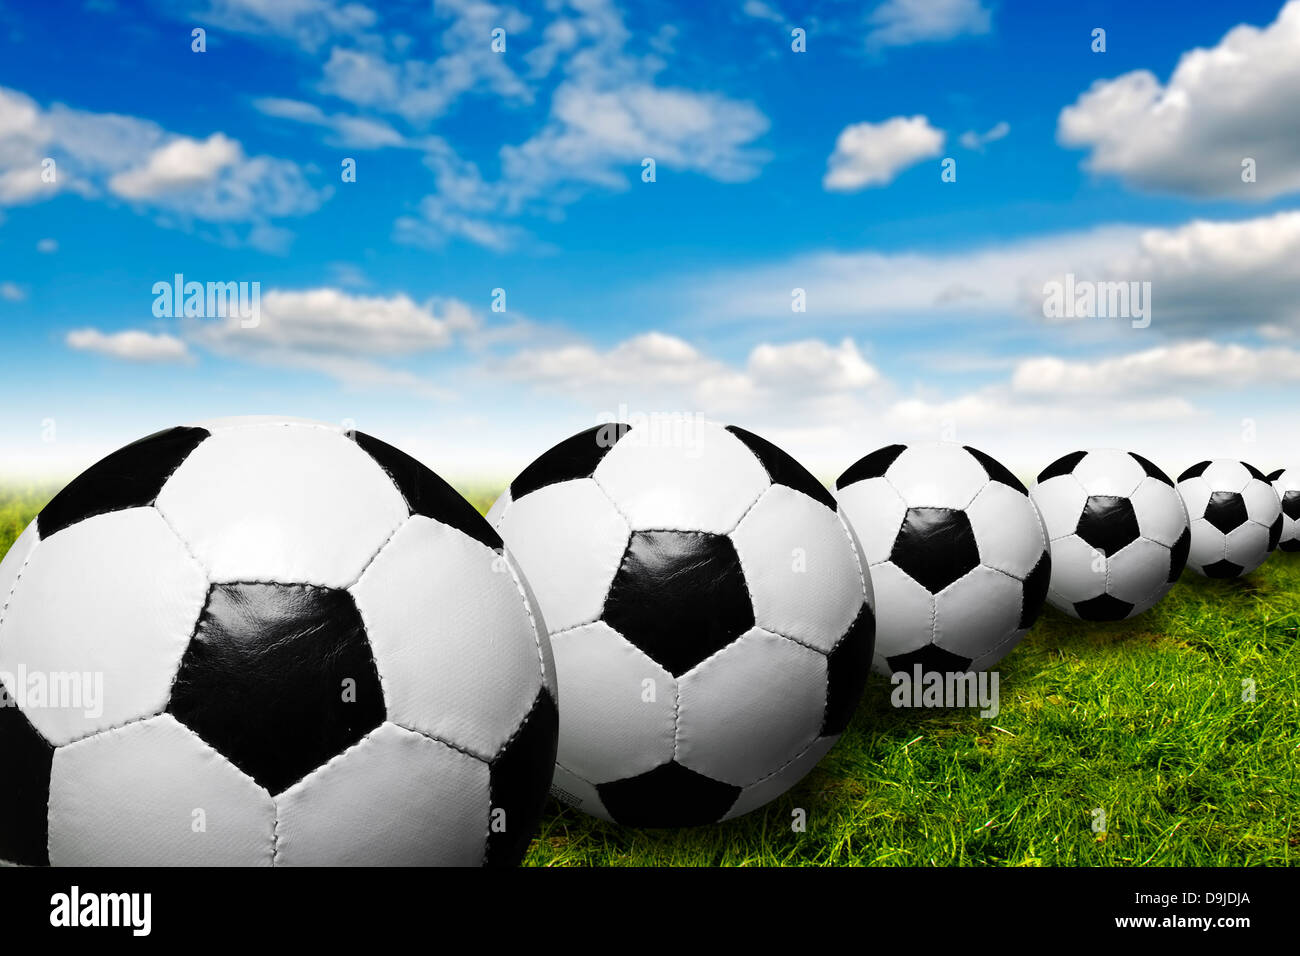 Les ballons de football dans une rangée Banque D'Images